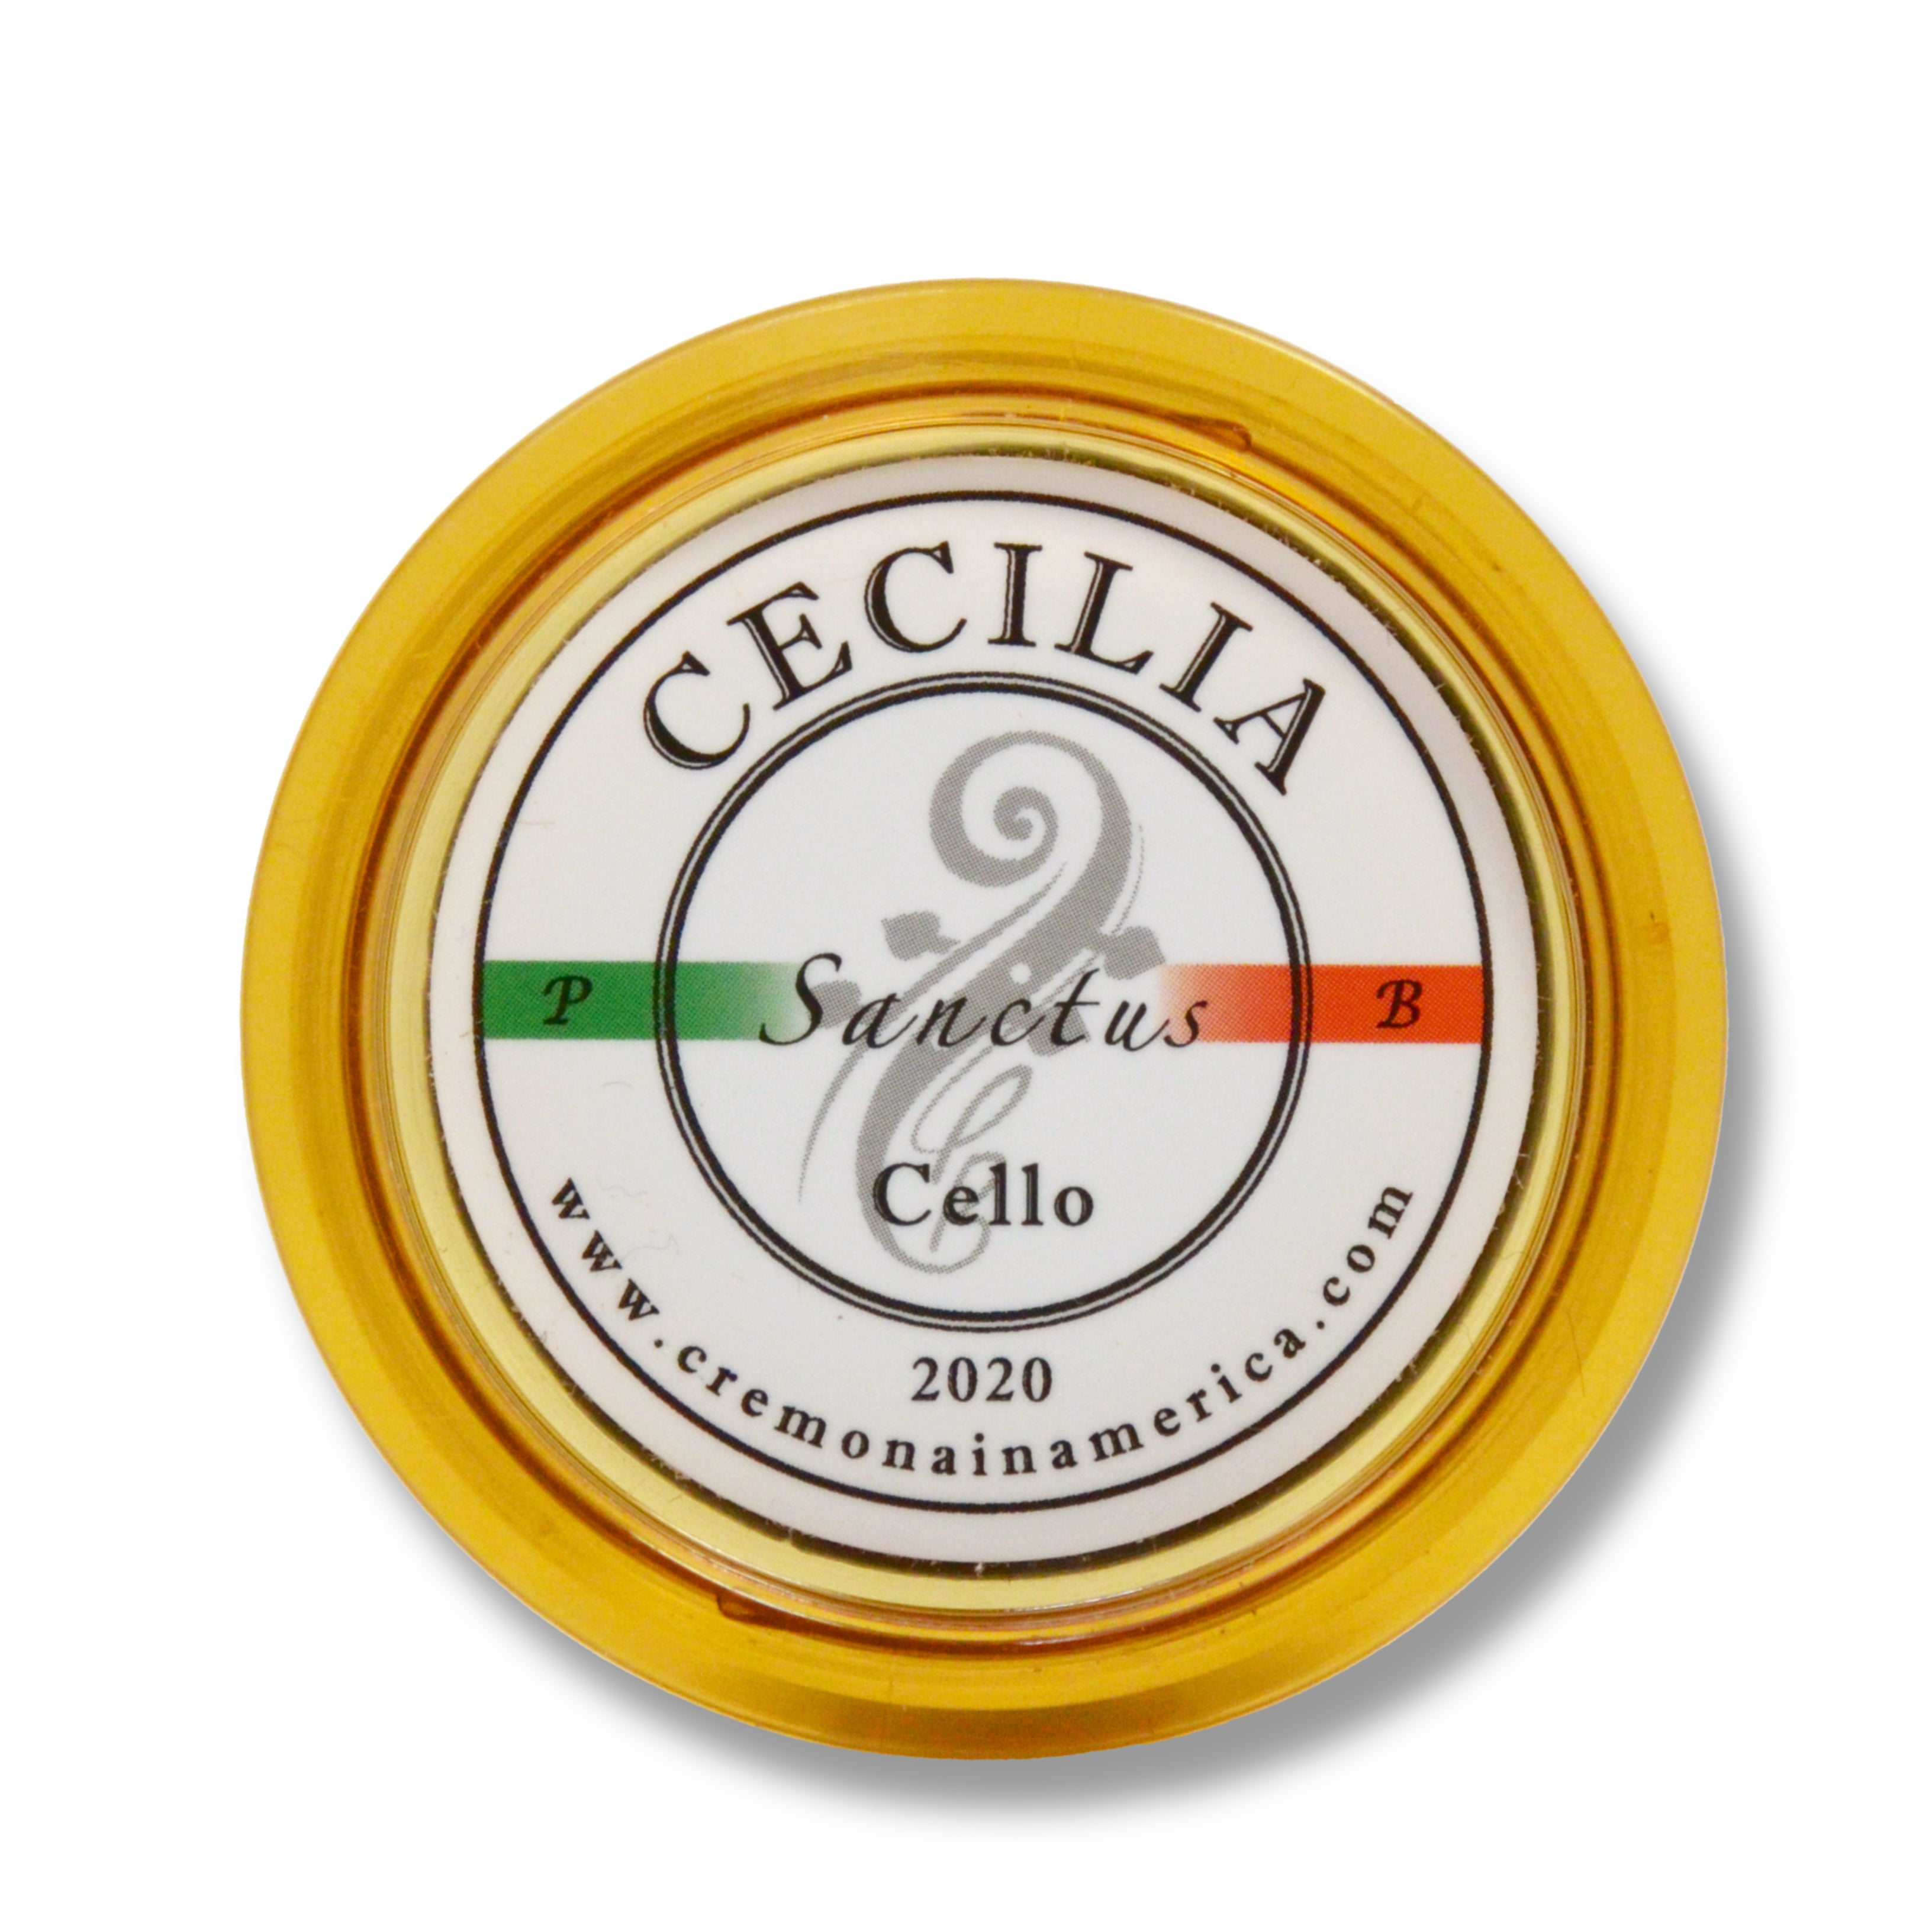 CECILIA Sanctus Cello